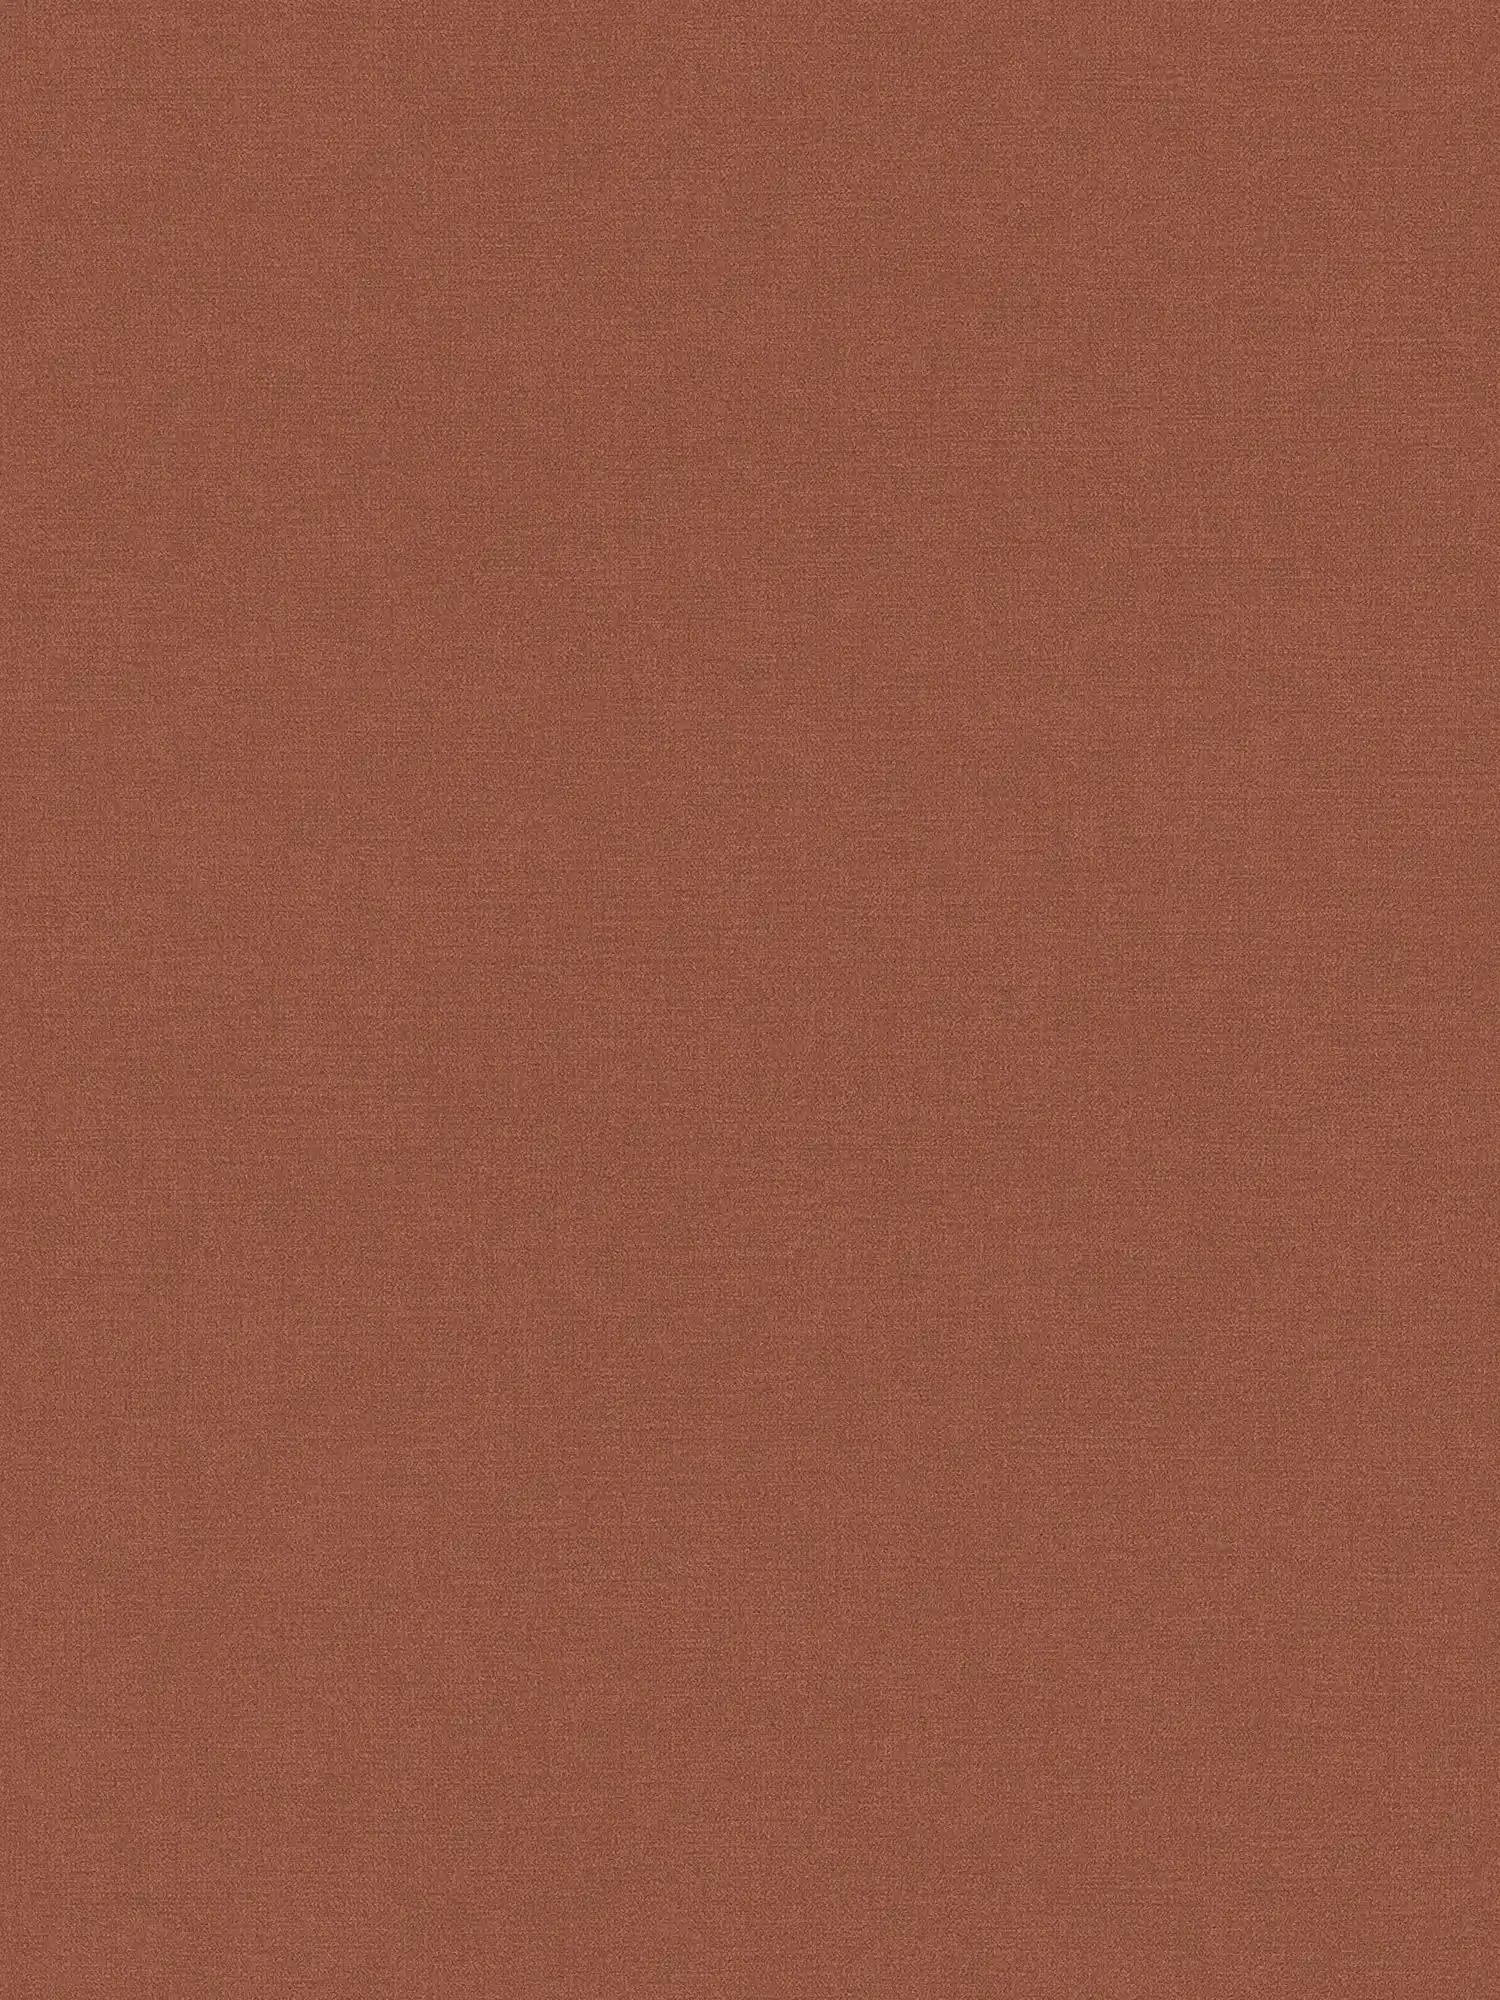 Papier peint uni dans les tons foncés - rouge-brun
